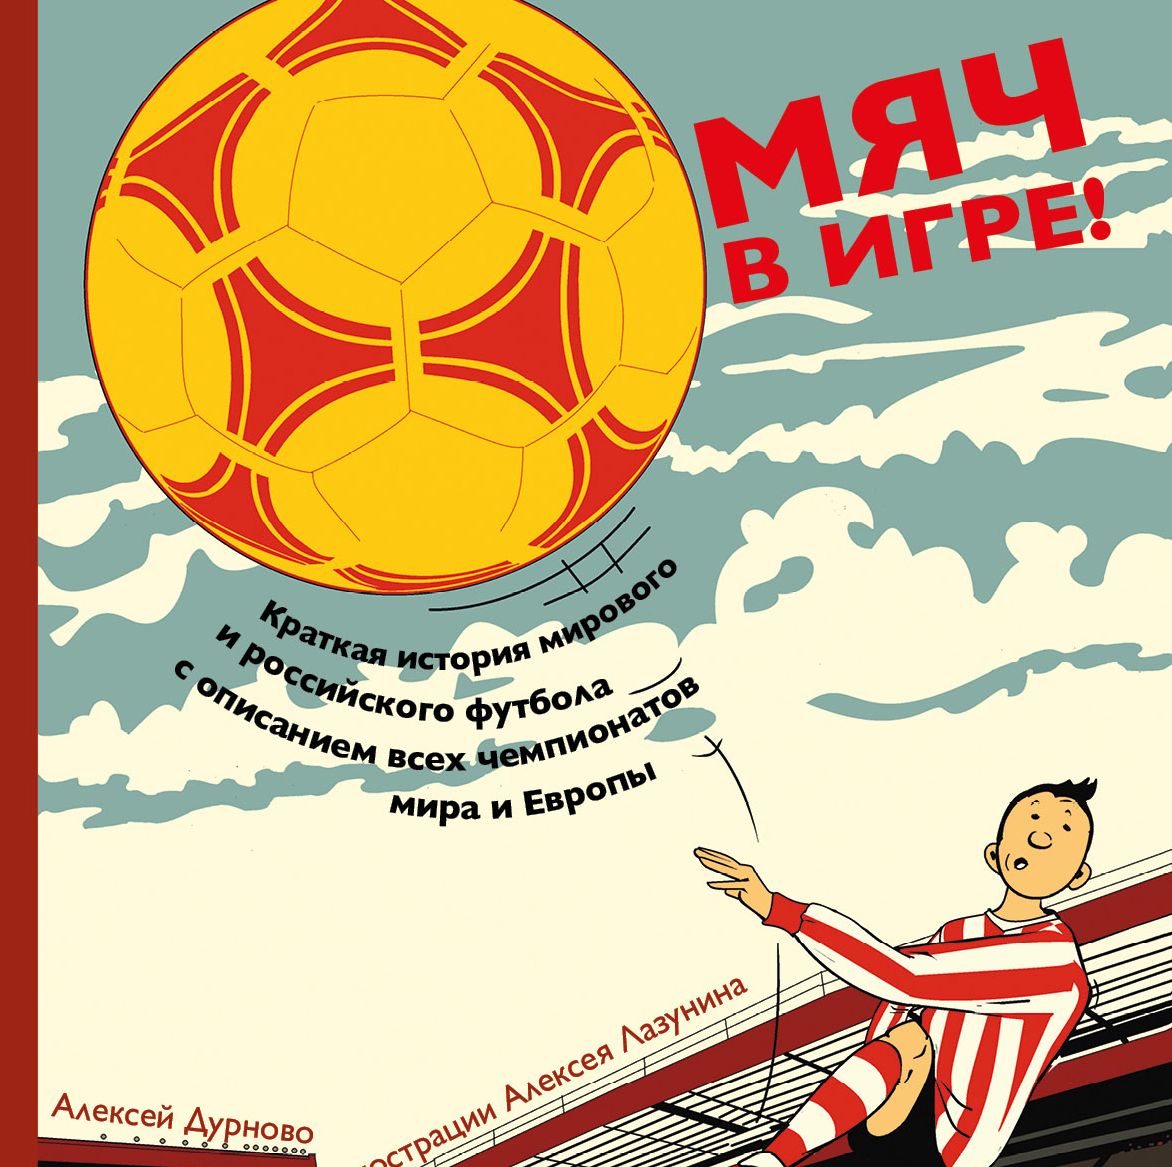 Выставка Алексея Лазунина к книге «Мяч в игре!»